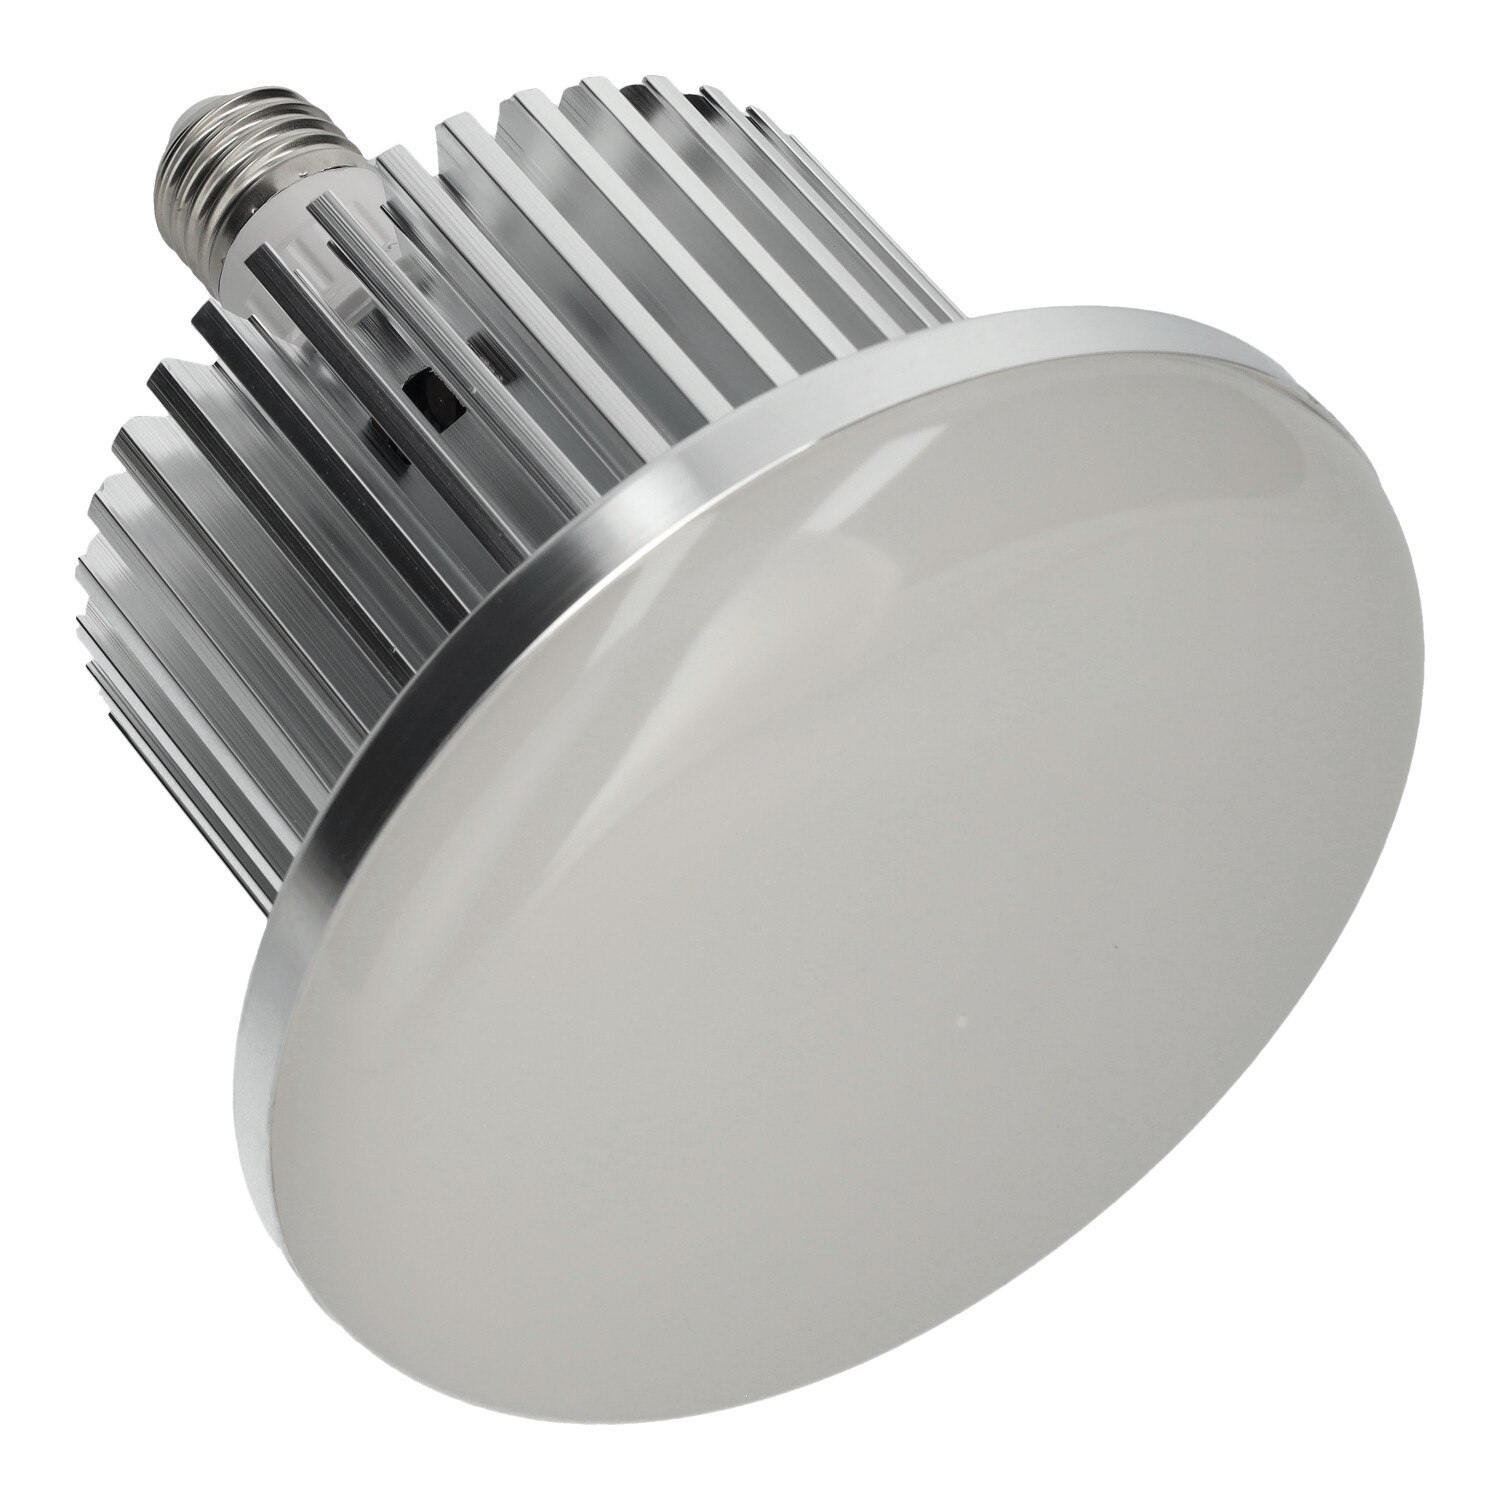 50W Industrielle LED-Lampe